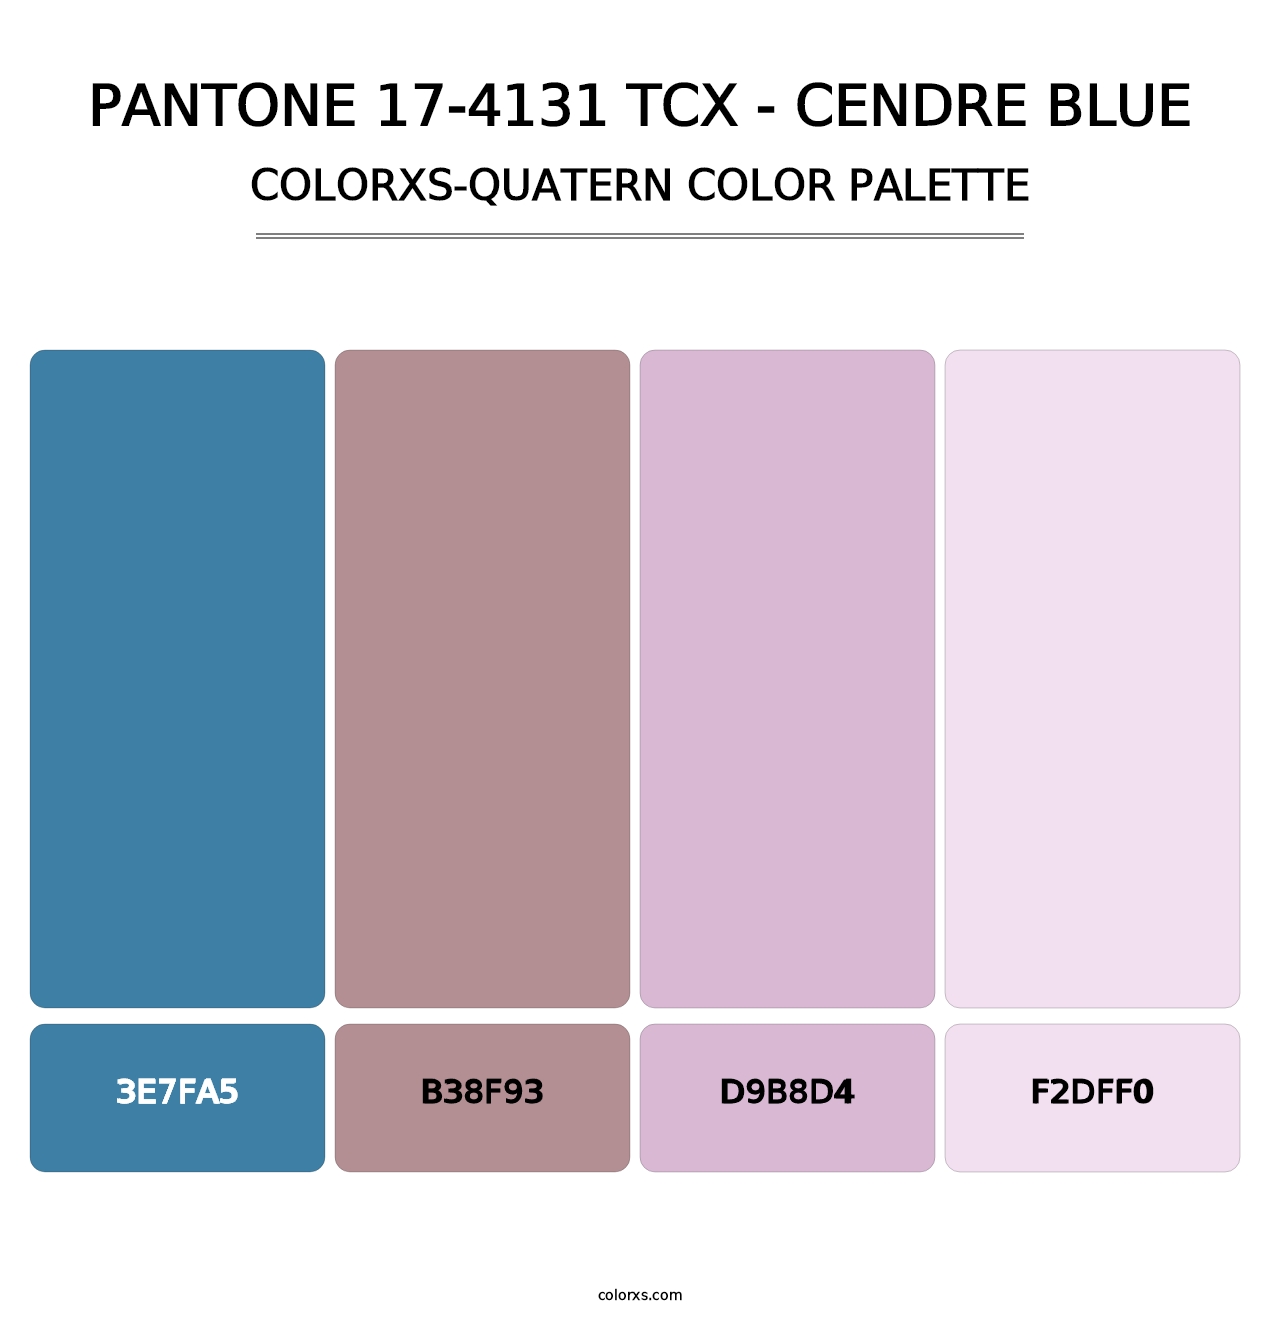 PANTONE 17-4131 TCX - Cendre Blue - Colorxs Quatern Palette